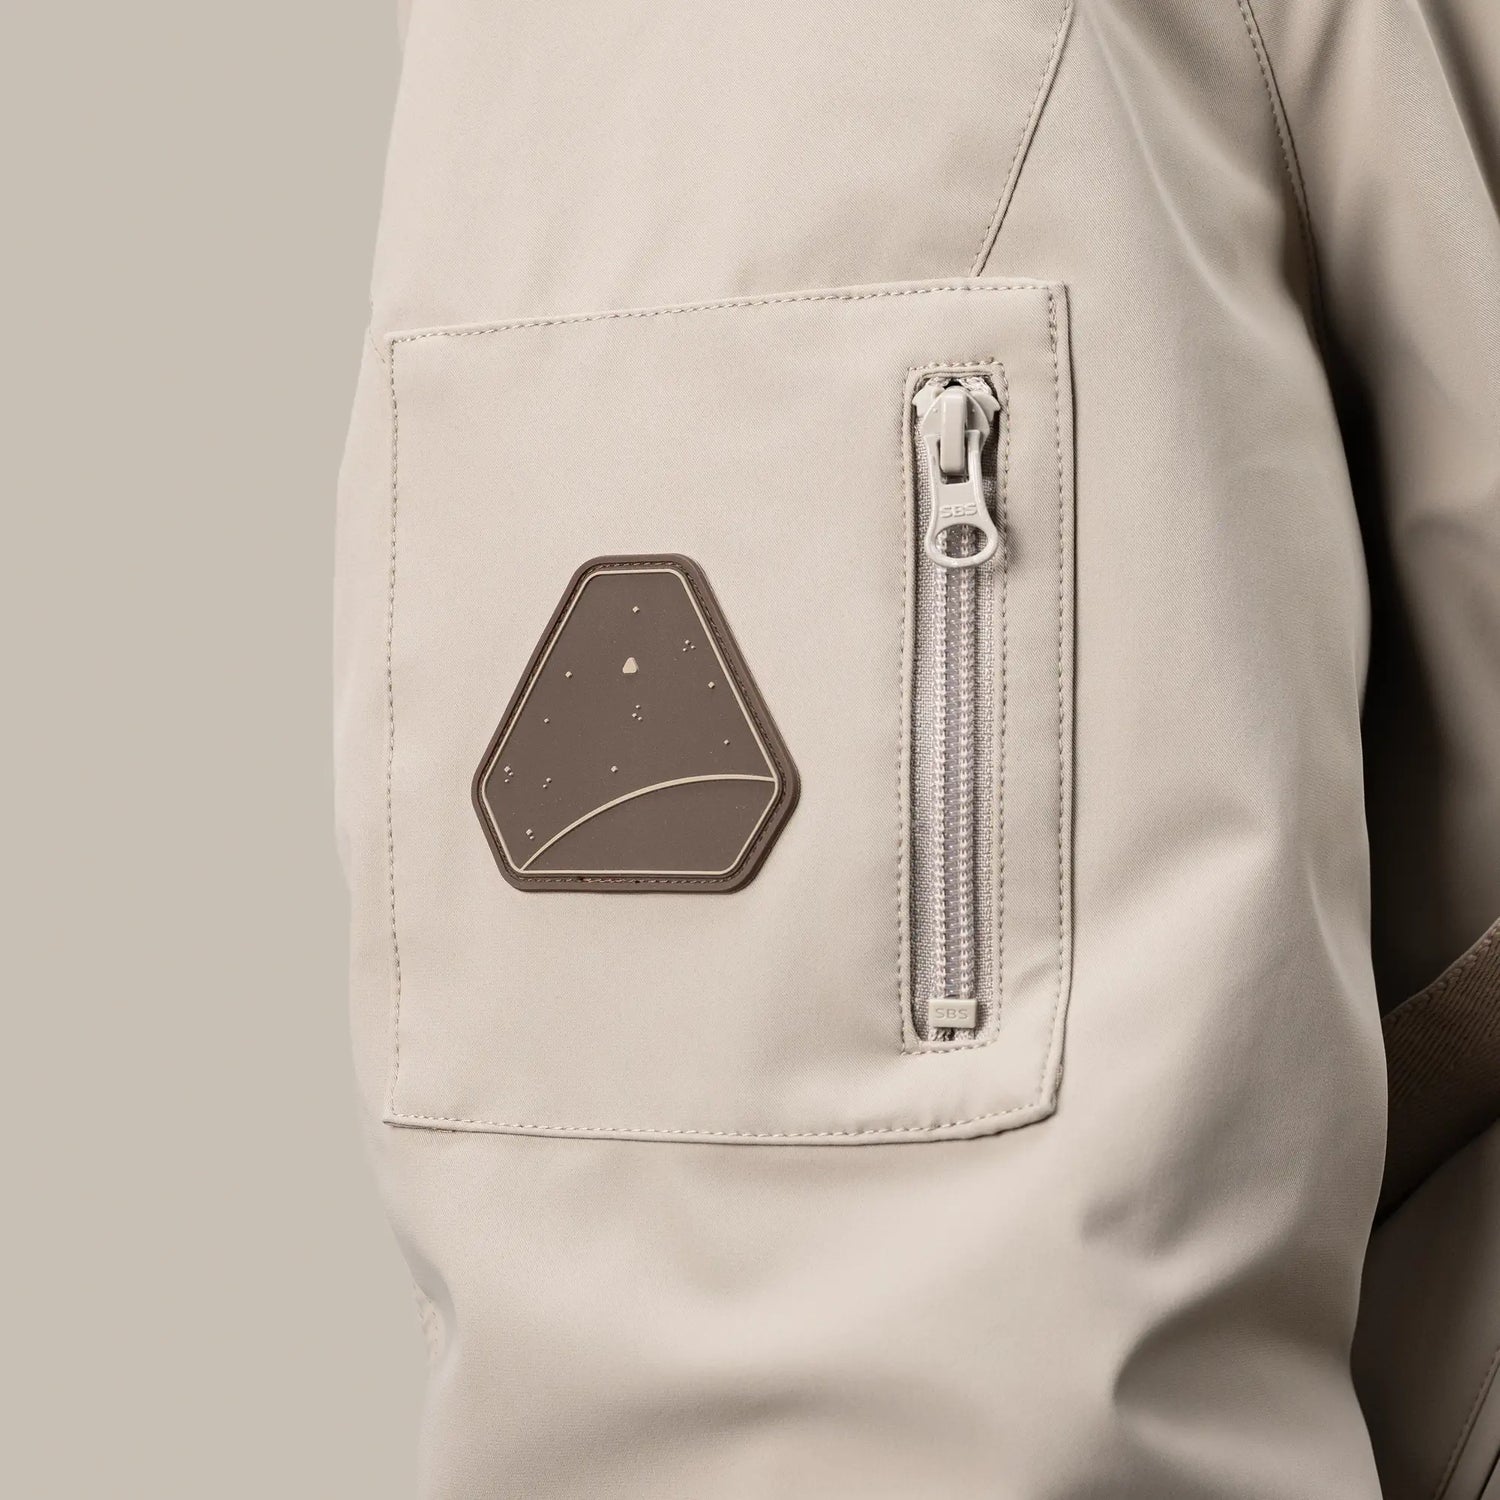 Zoom patch logo spacefox cousu sur une poche de manche